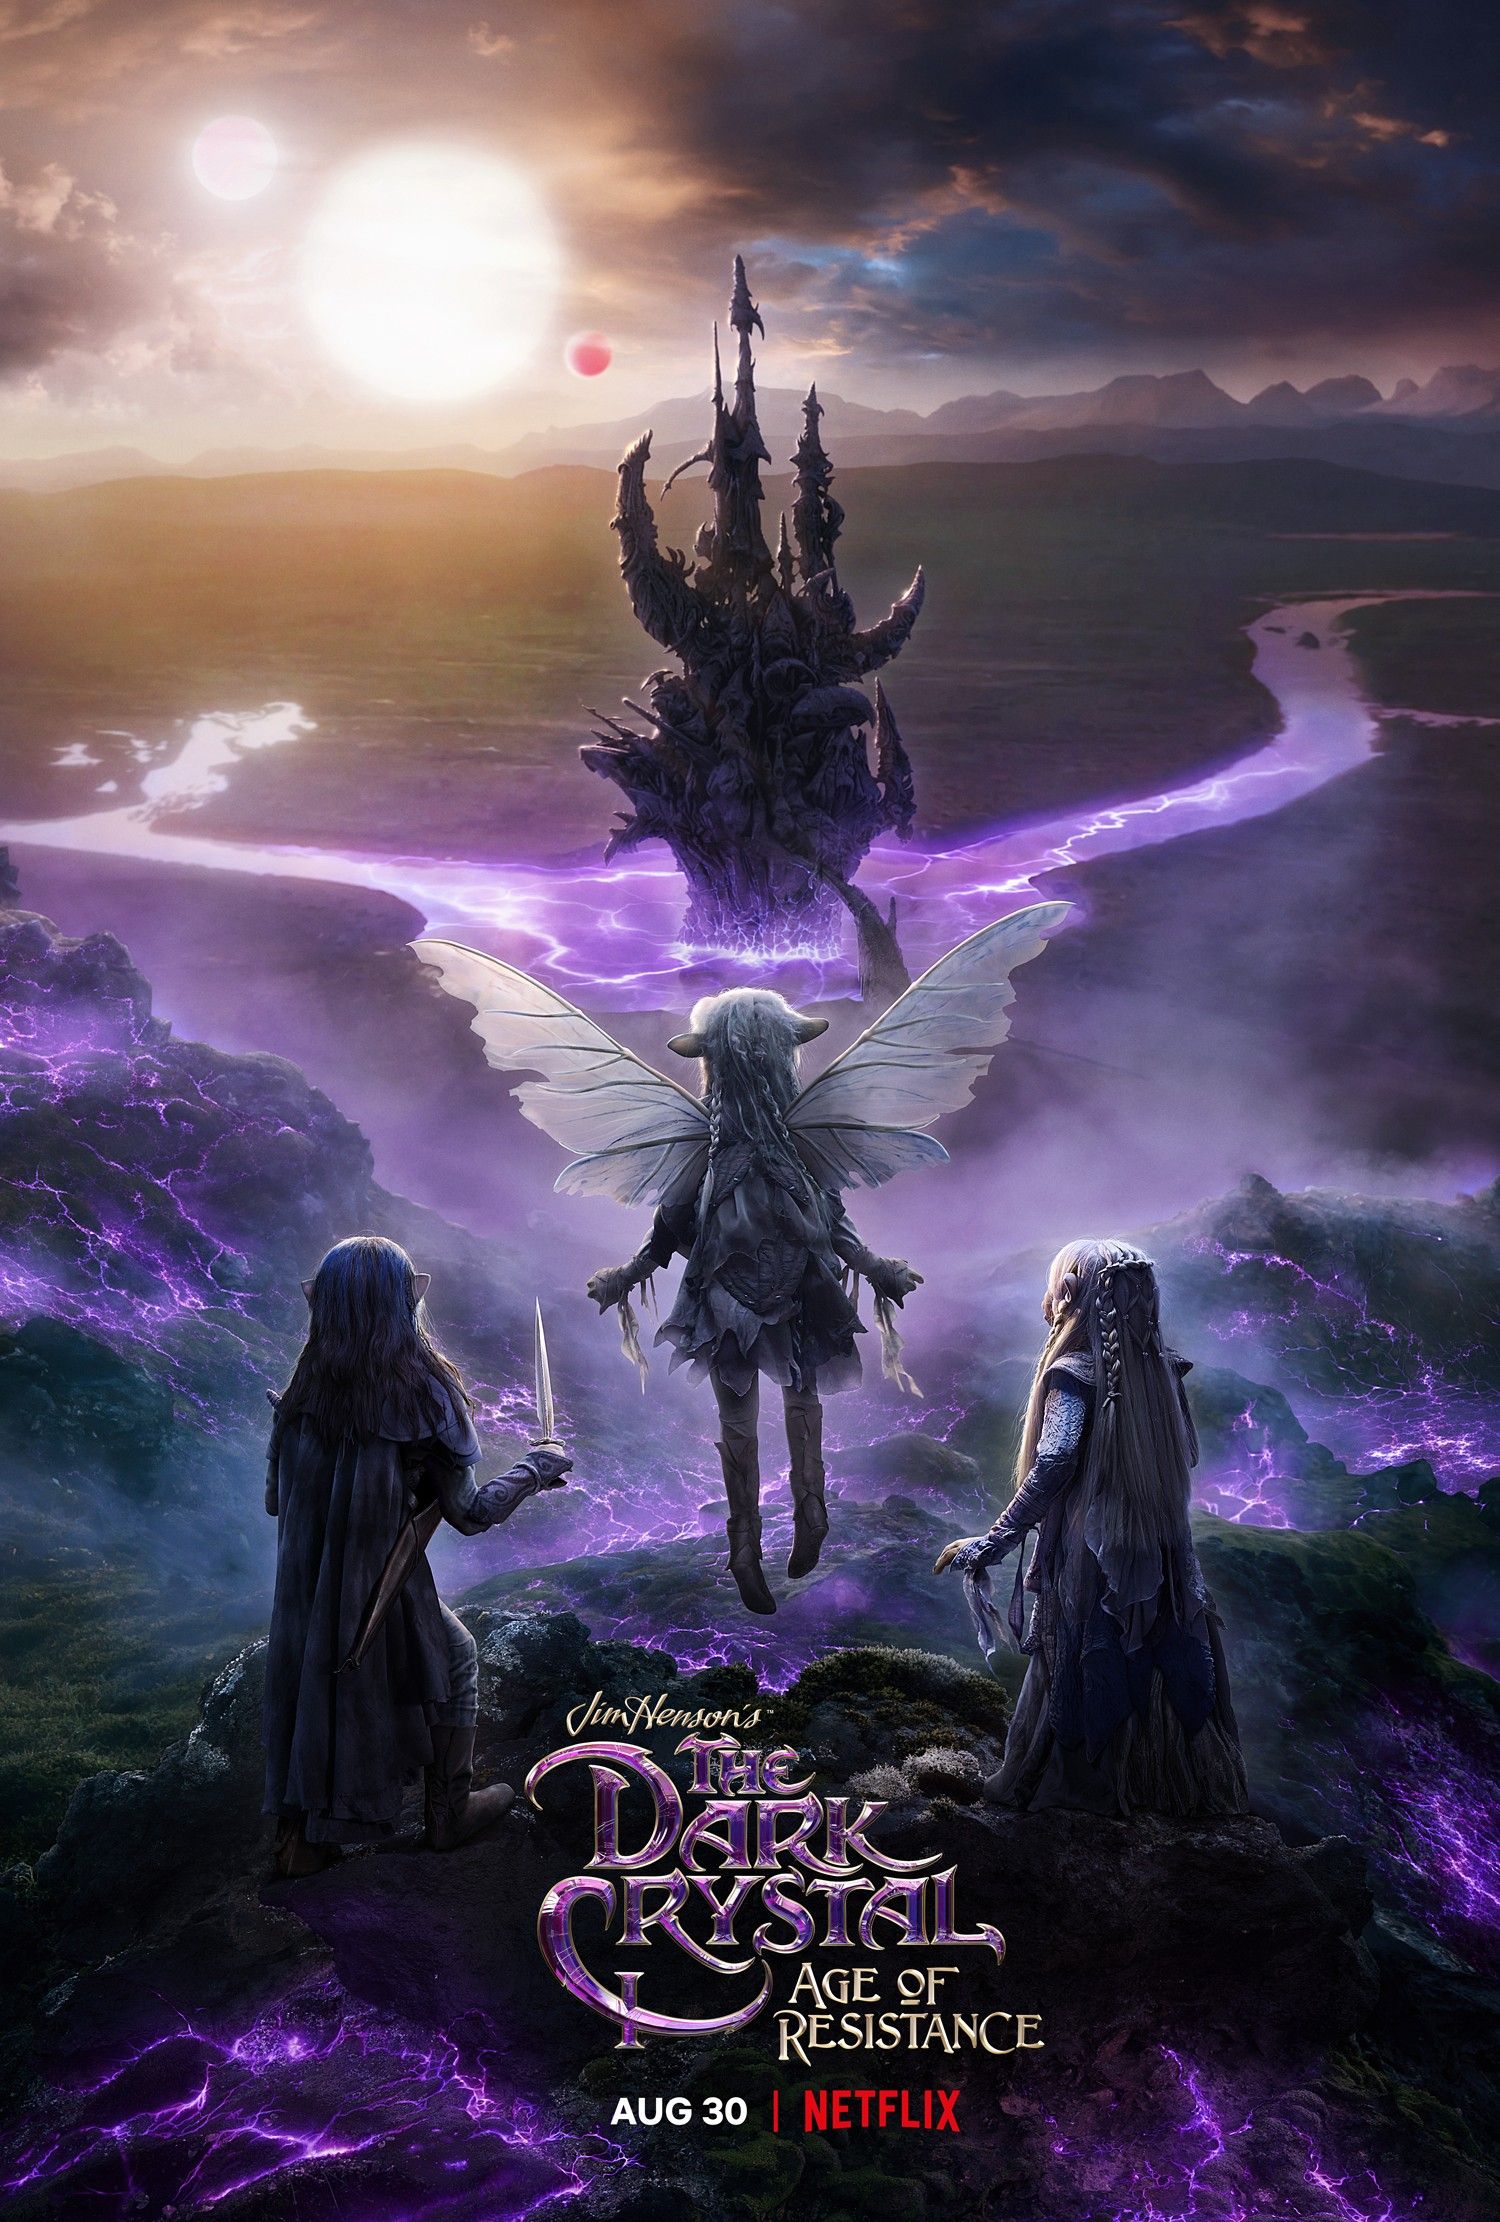 Netflix’s Dark Crystal: Age of Resistance Teaser Trailer & Poster Released